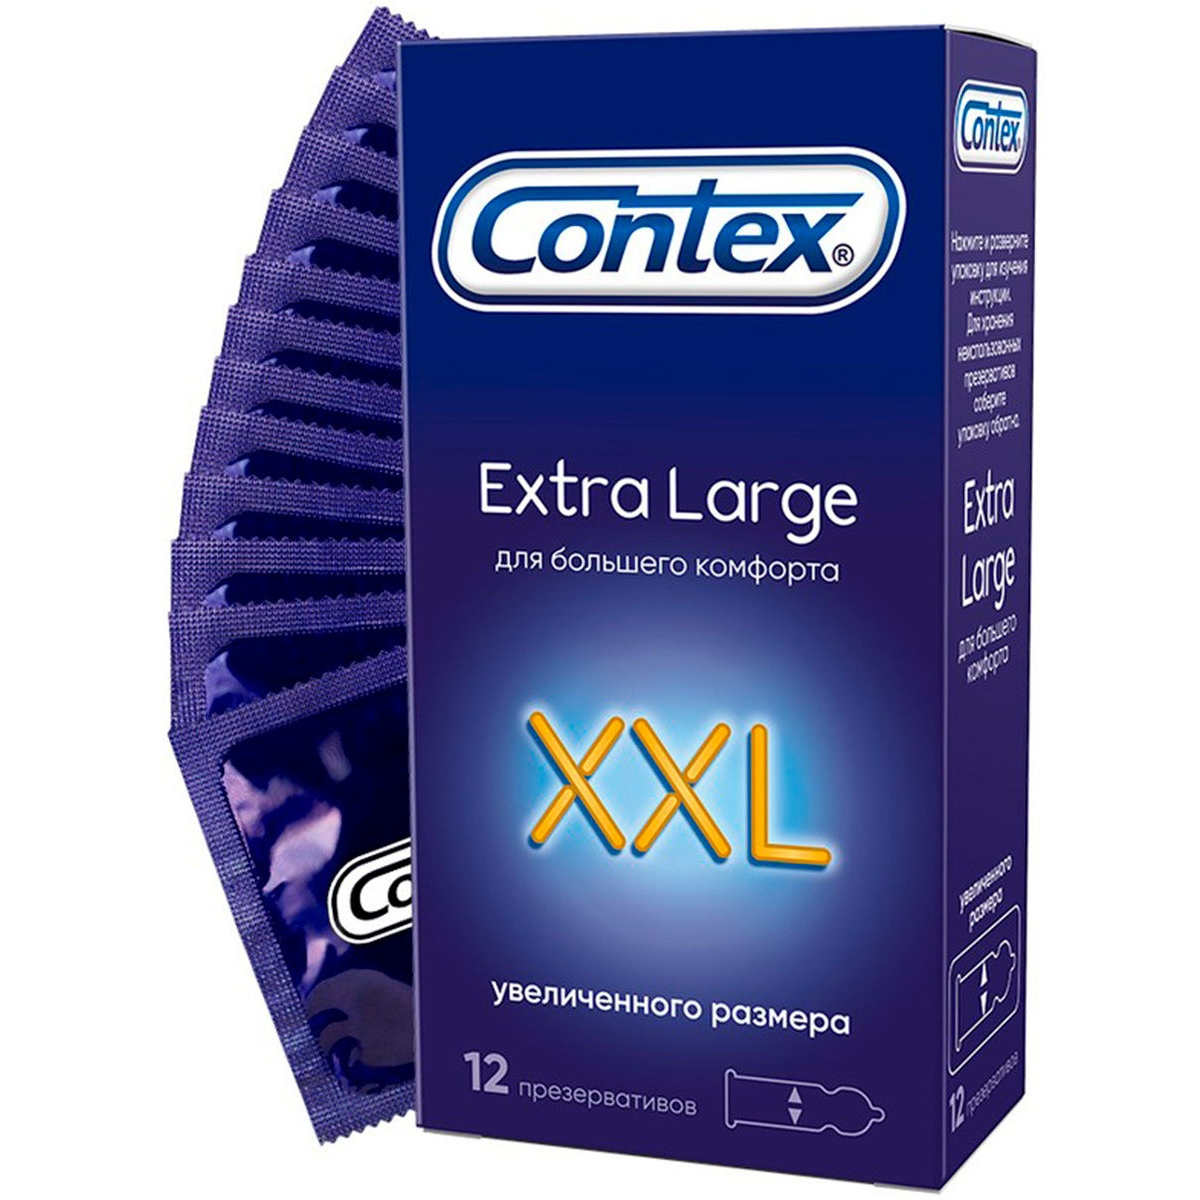 Презервативы Contex XXL Extra large №12 презервативы contex xxl extra large 12